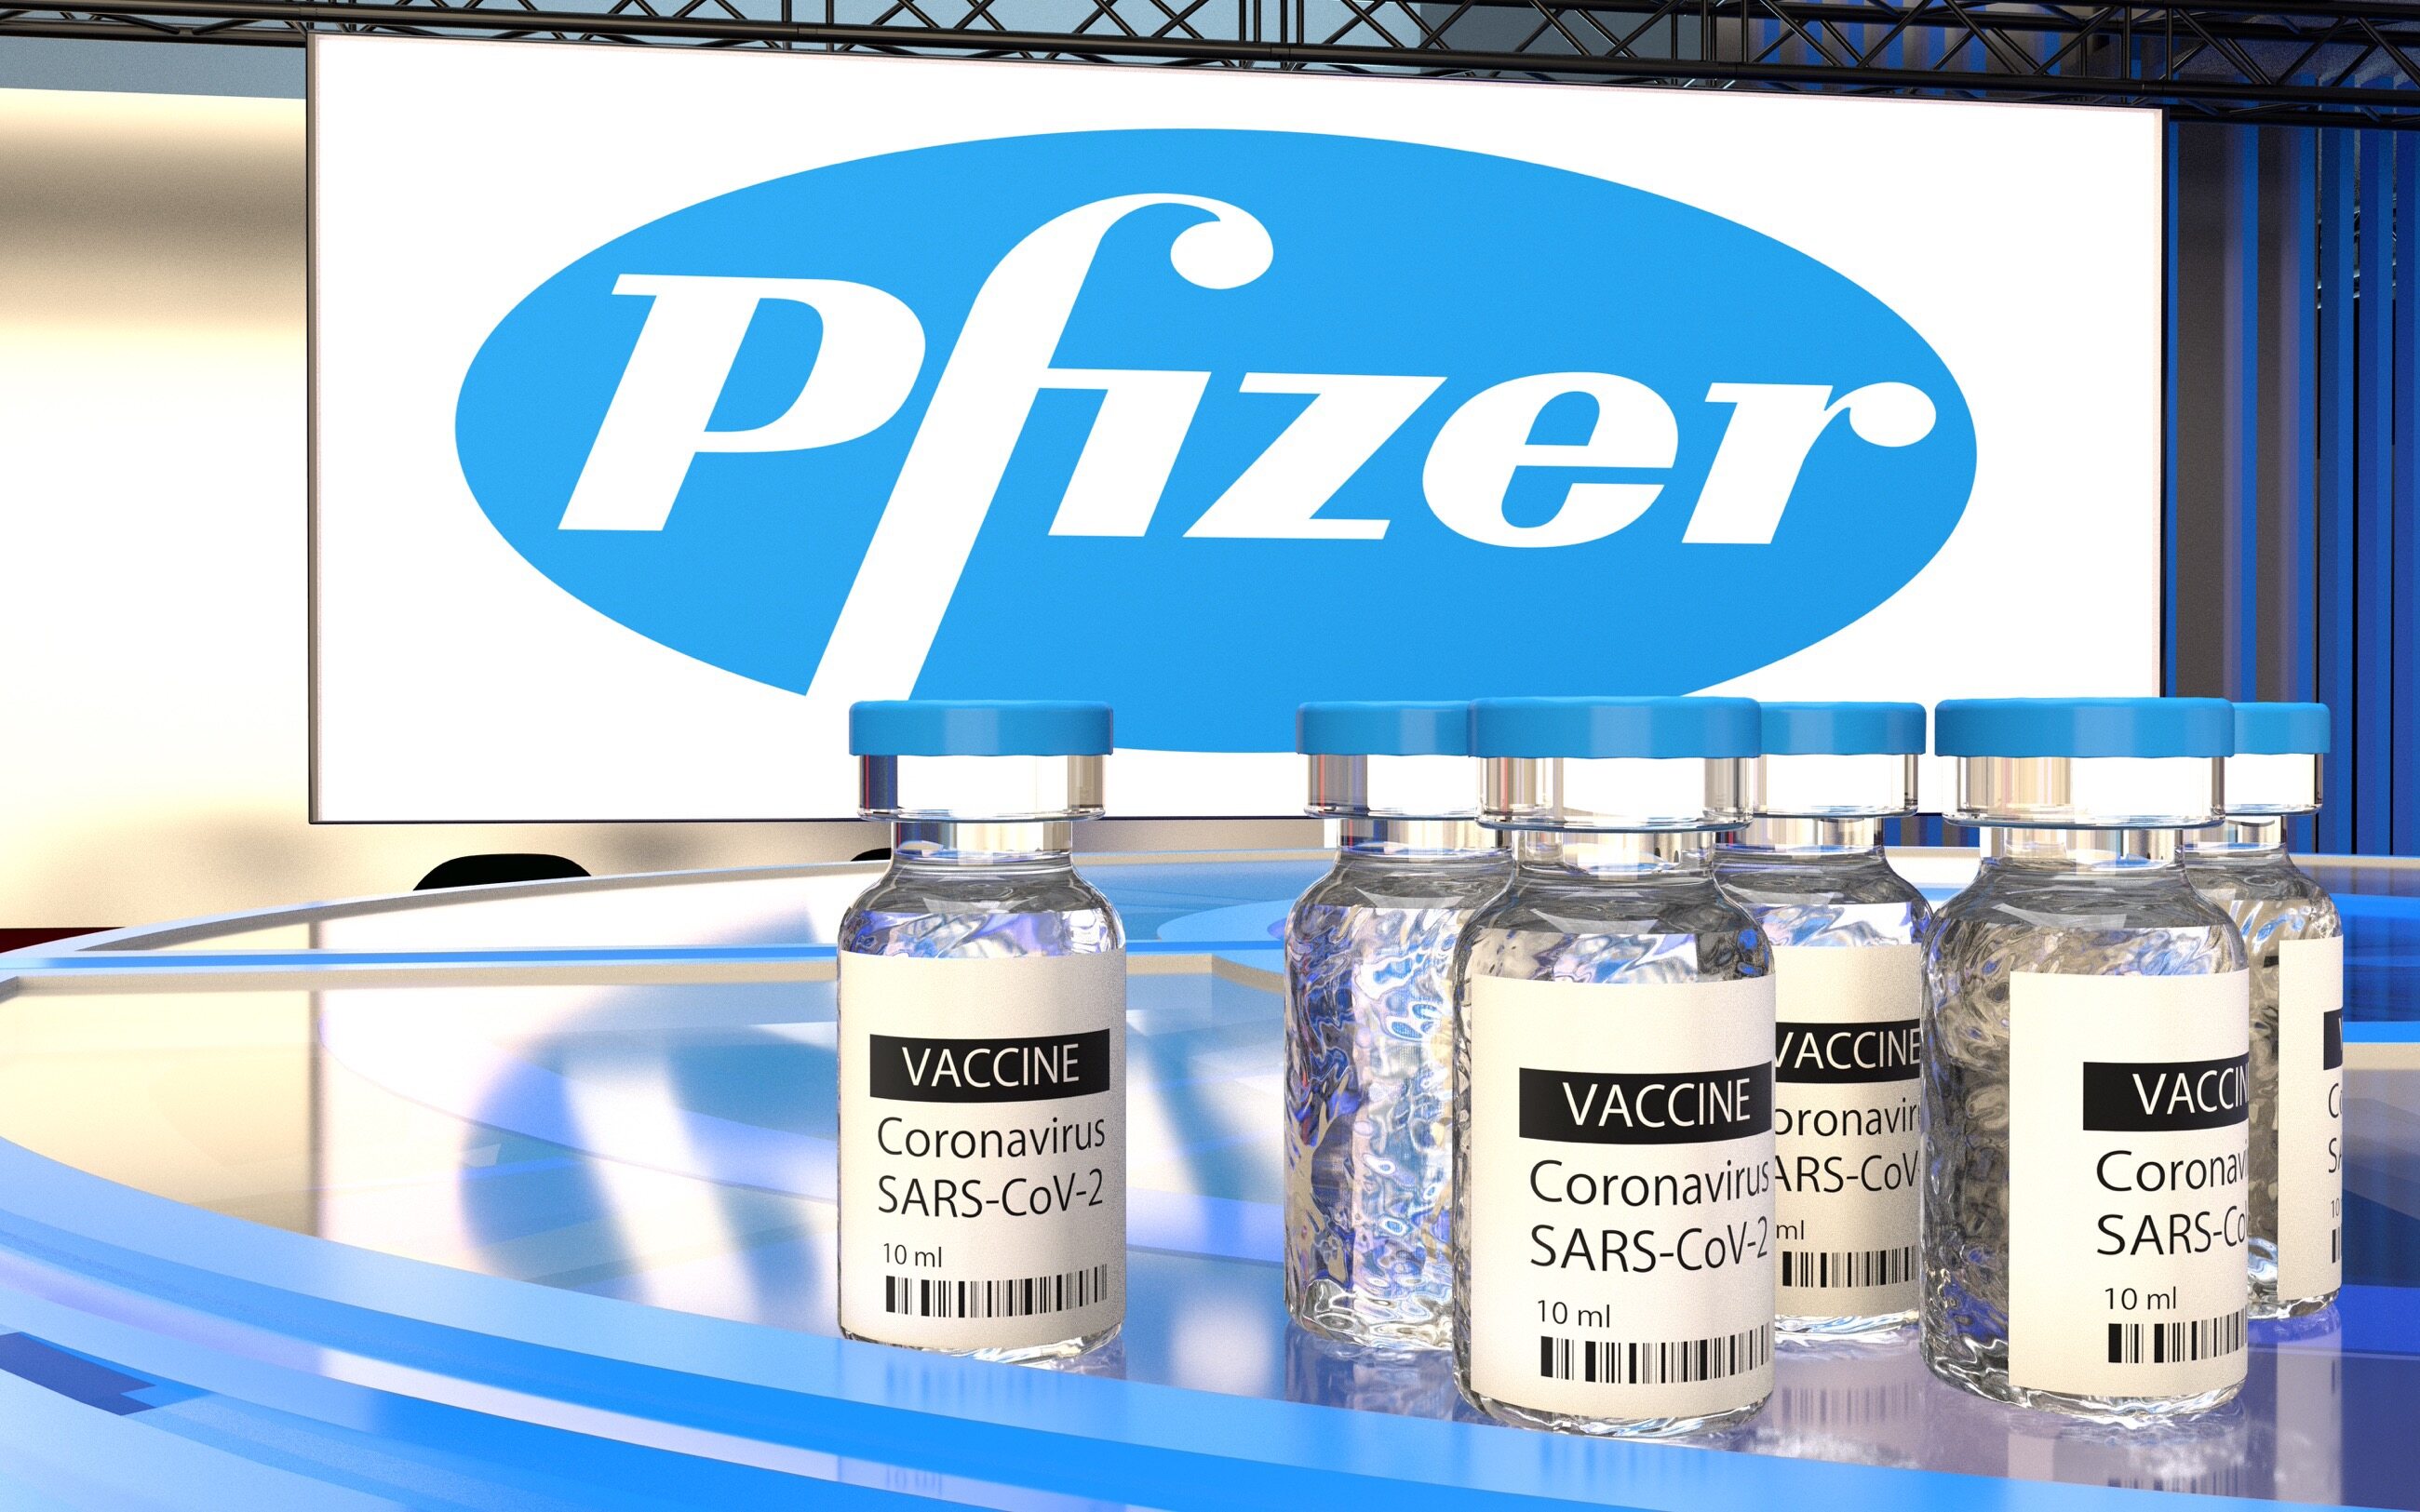 Файзер ковид. Вакцина Pfizer/BIONTECH. Пфайзер вакцина от коронавируса. Вакцина Pfizer/BIONTECH против Covid-19. Pfizer вакцина от коронавируса.